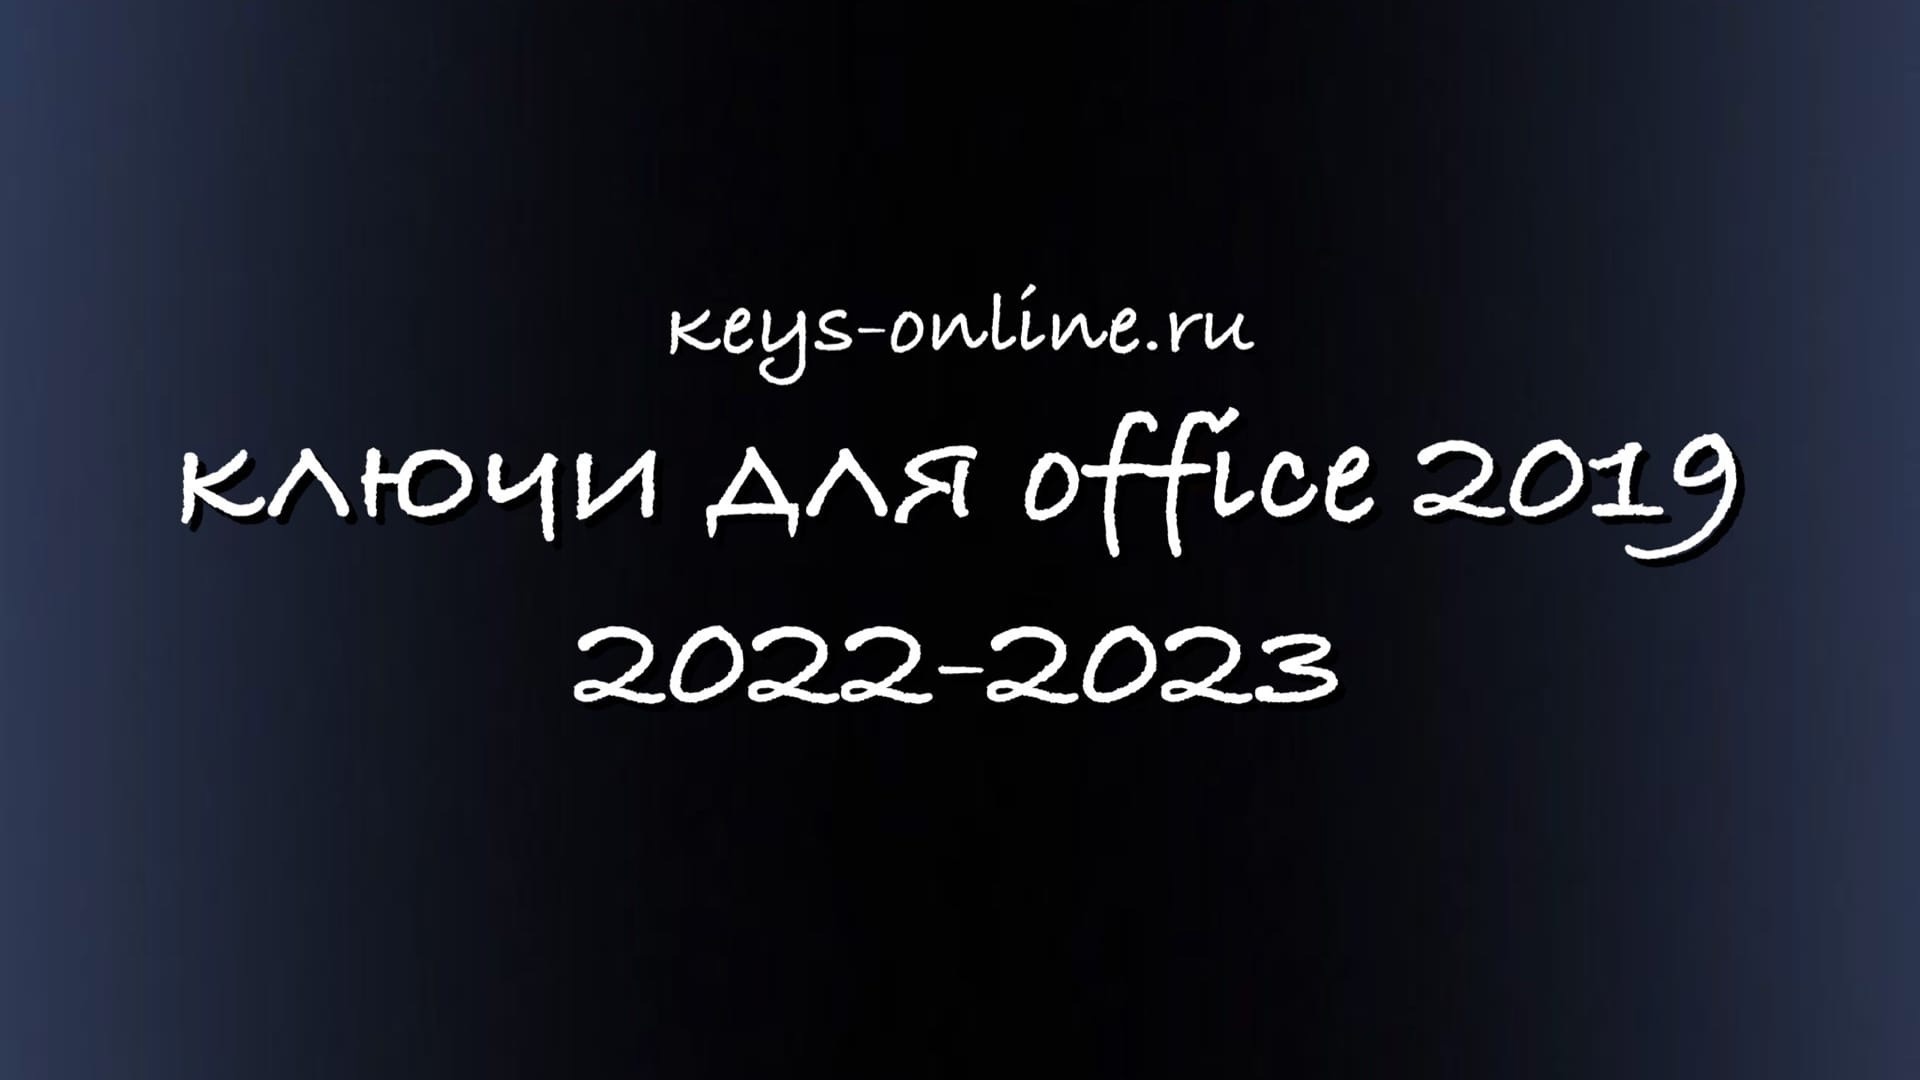 Ключи для Office 2019 – 2022 – 2023